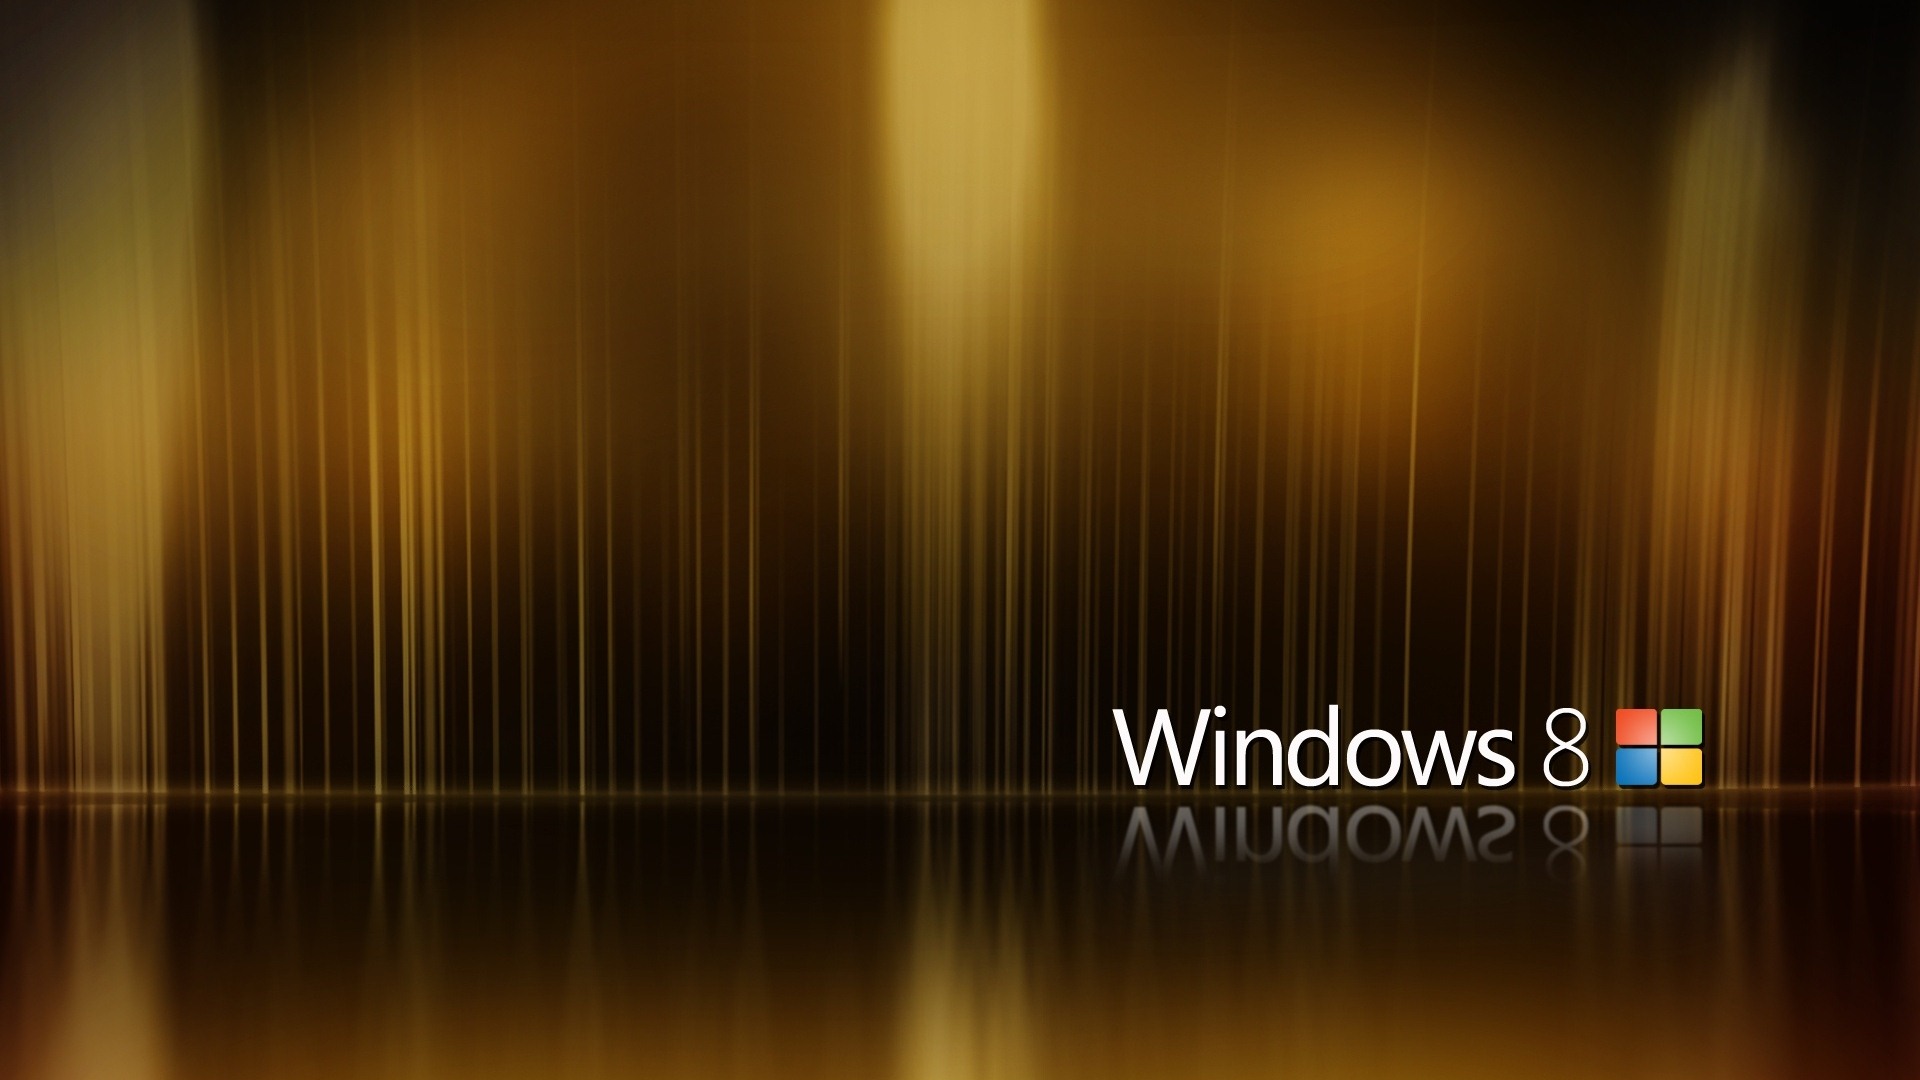 Windows 8 Theme Wallpaper (2) #8 - 1920x1080